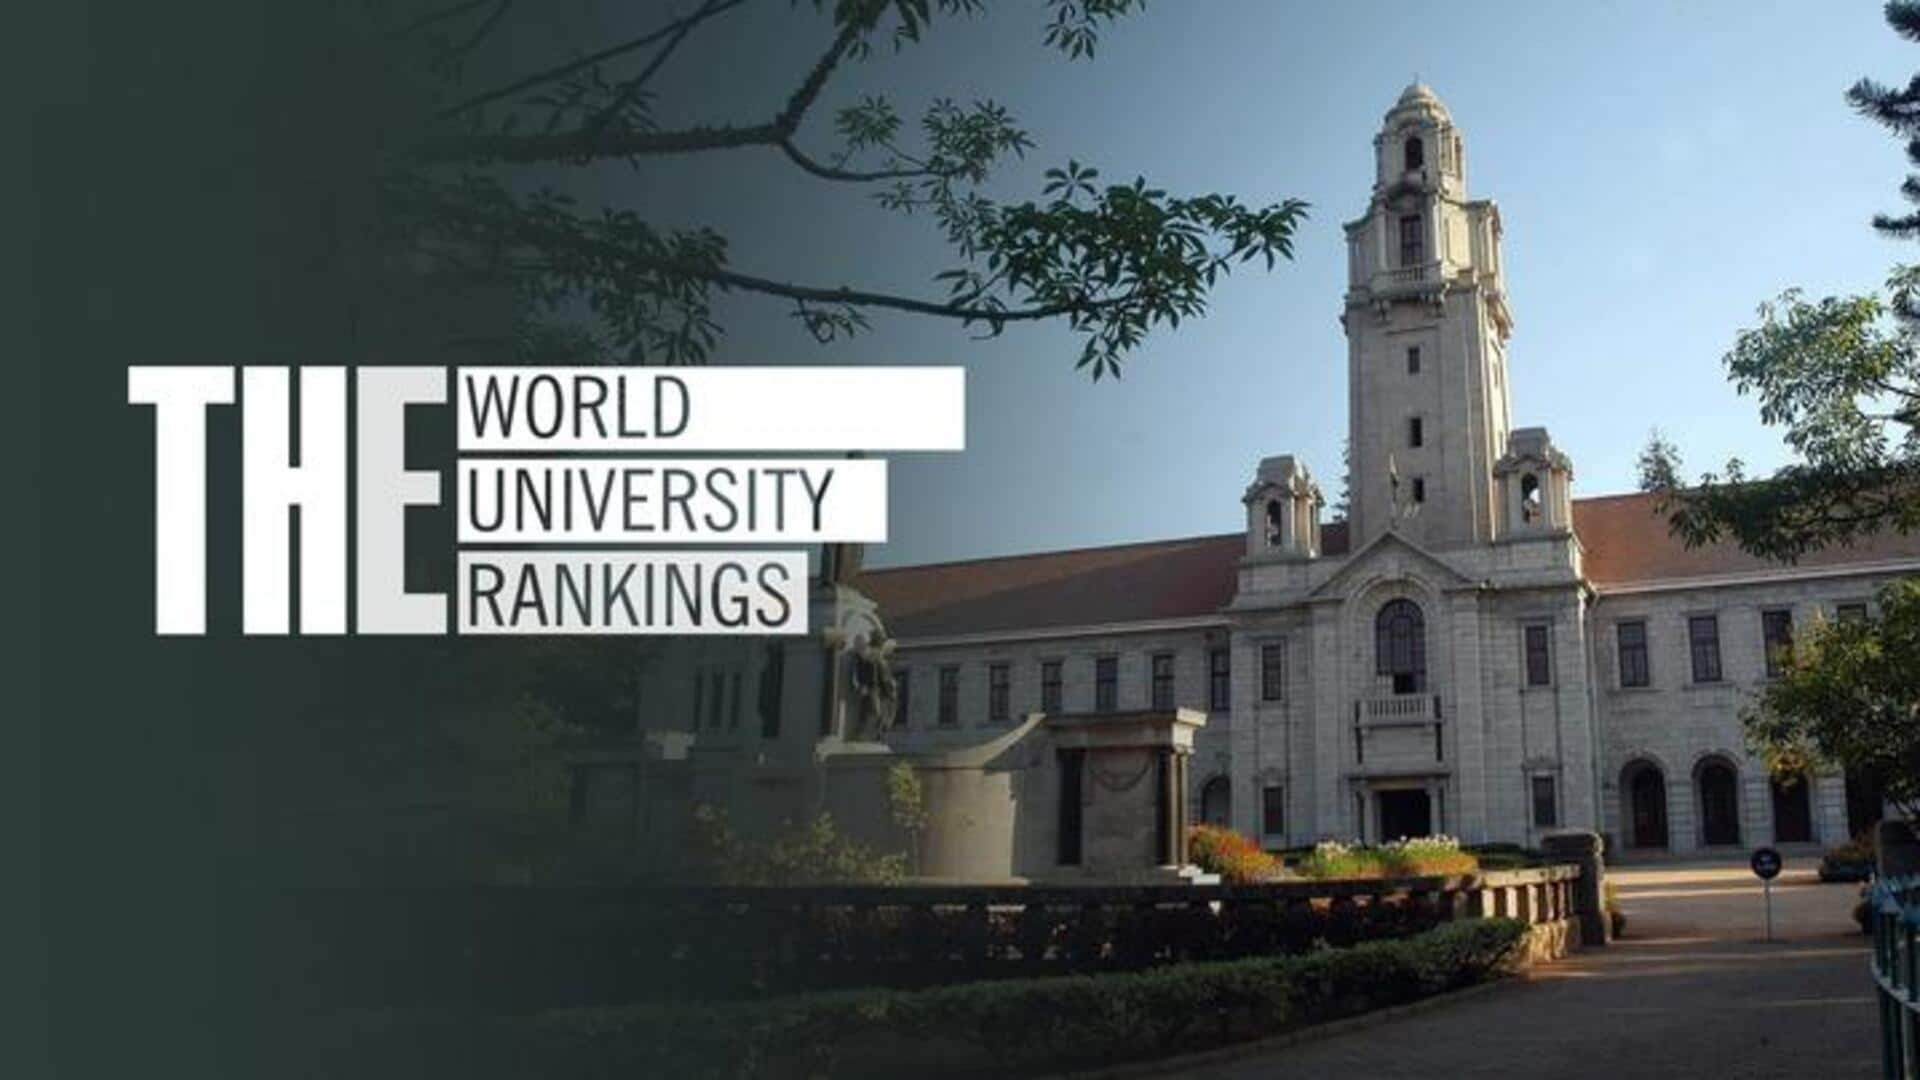 वर्ल्ड यूनिवर्सिटी रैंकिंग में शामिल हुए भारत के ये कॉलेज, जानिए इनमें कैसे मिलता है दाखिला